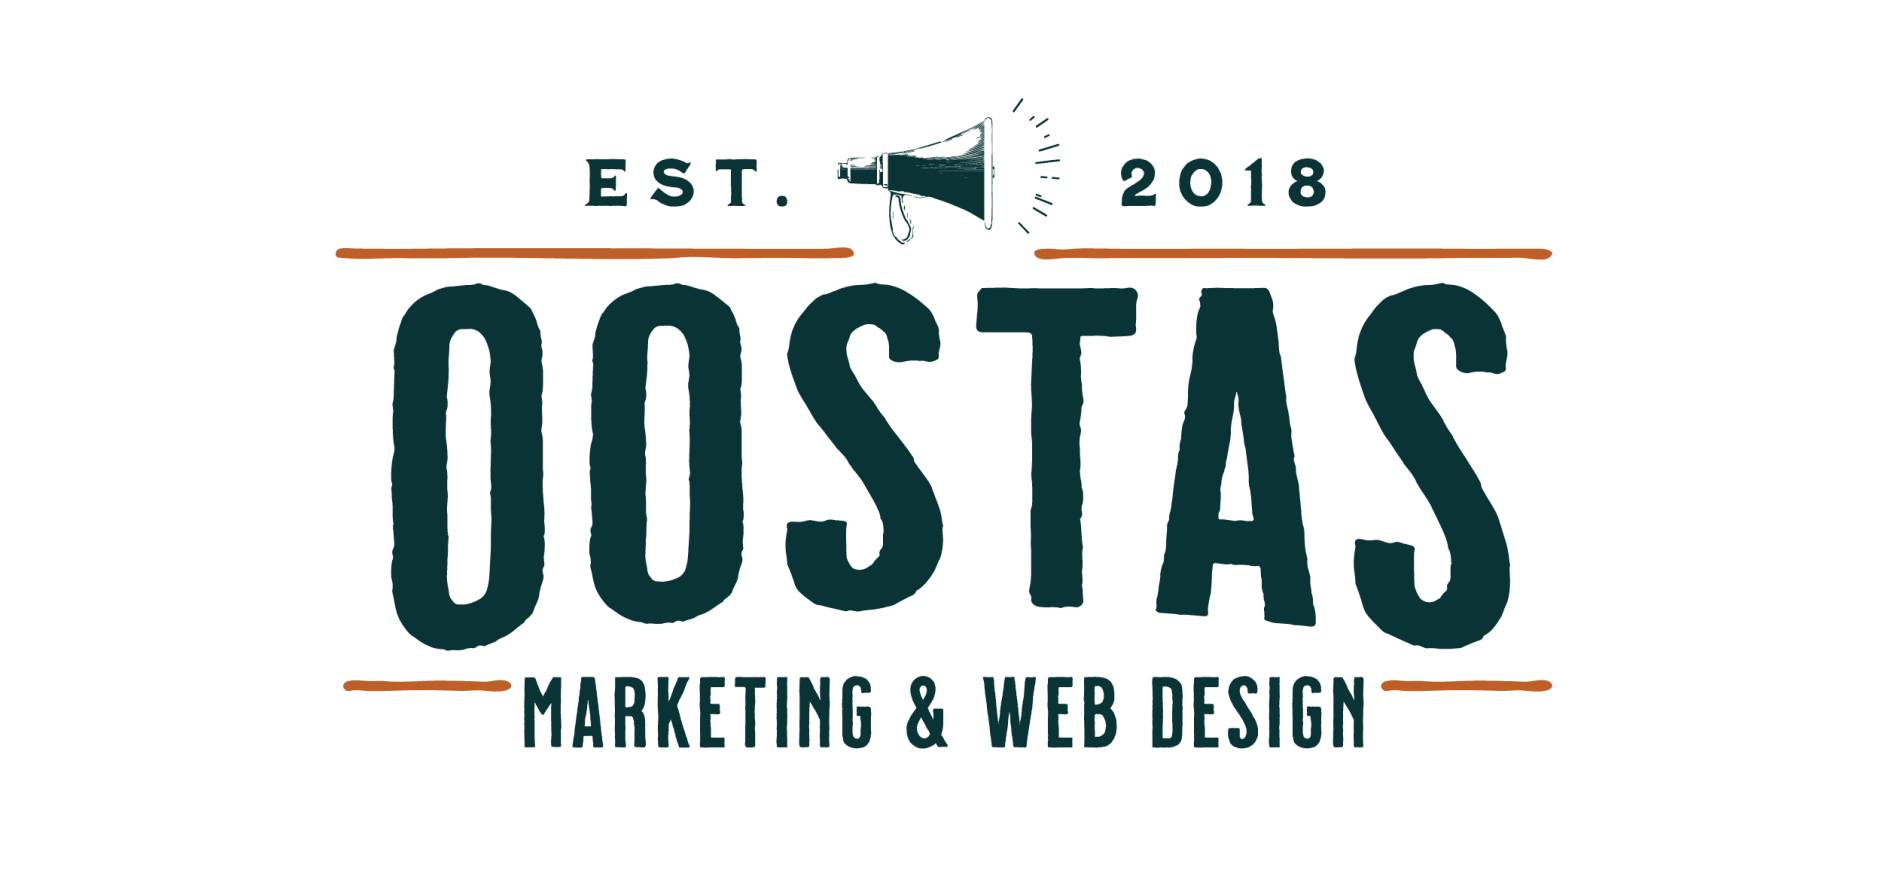 Digital marketing by Oostas in Lancaster, PA